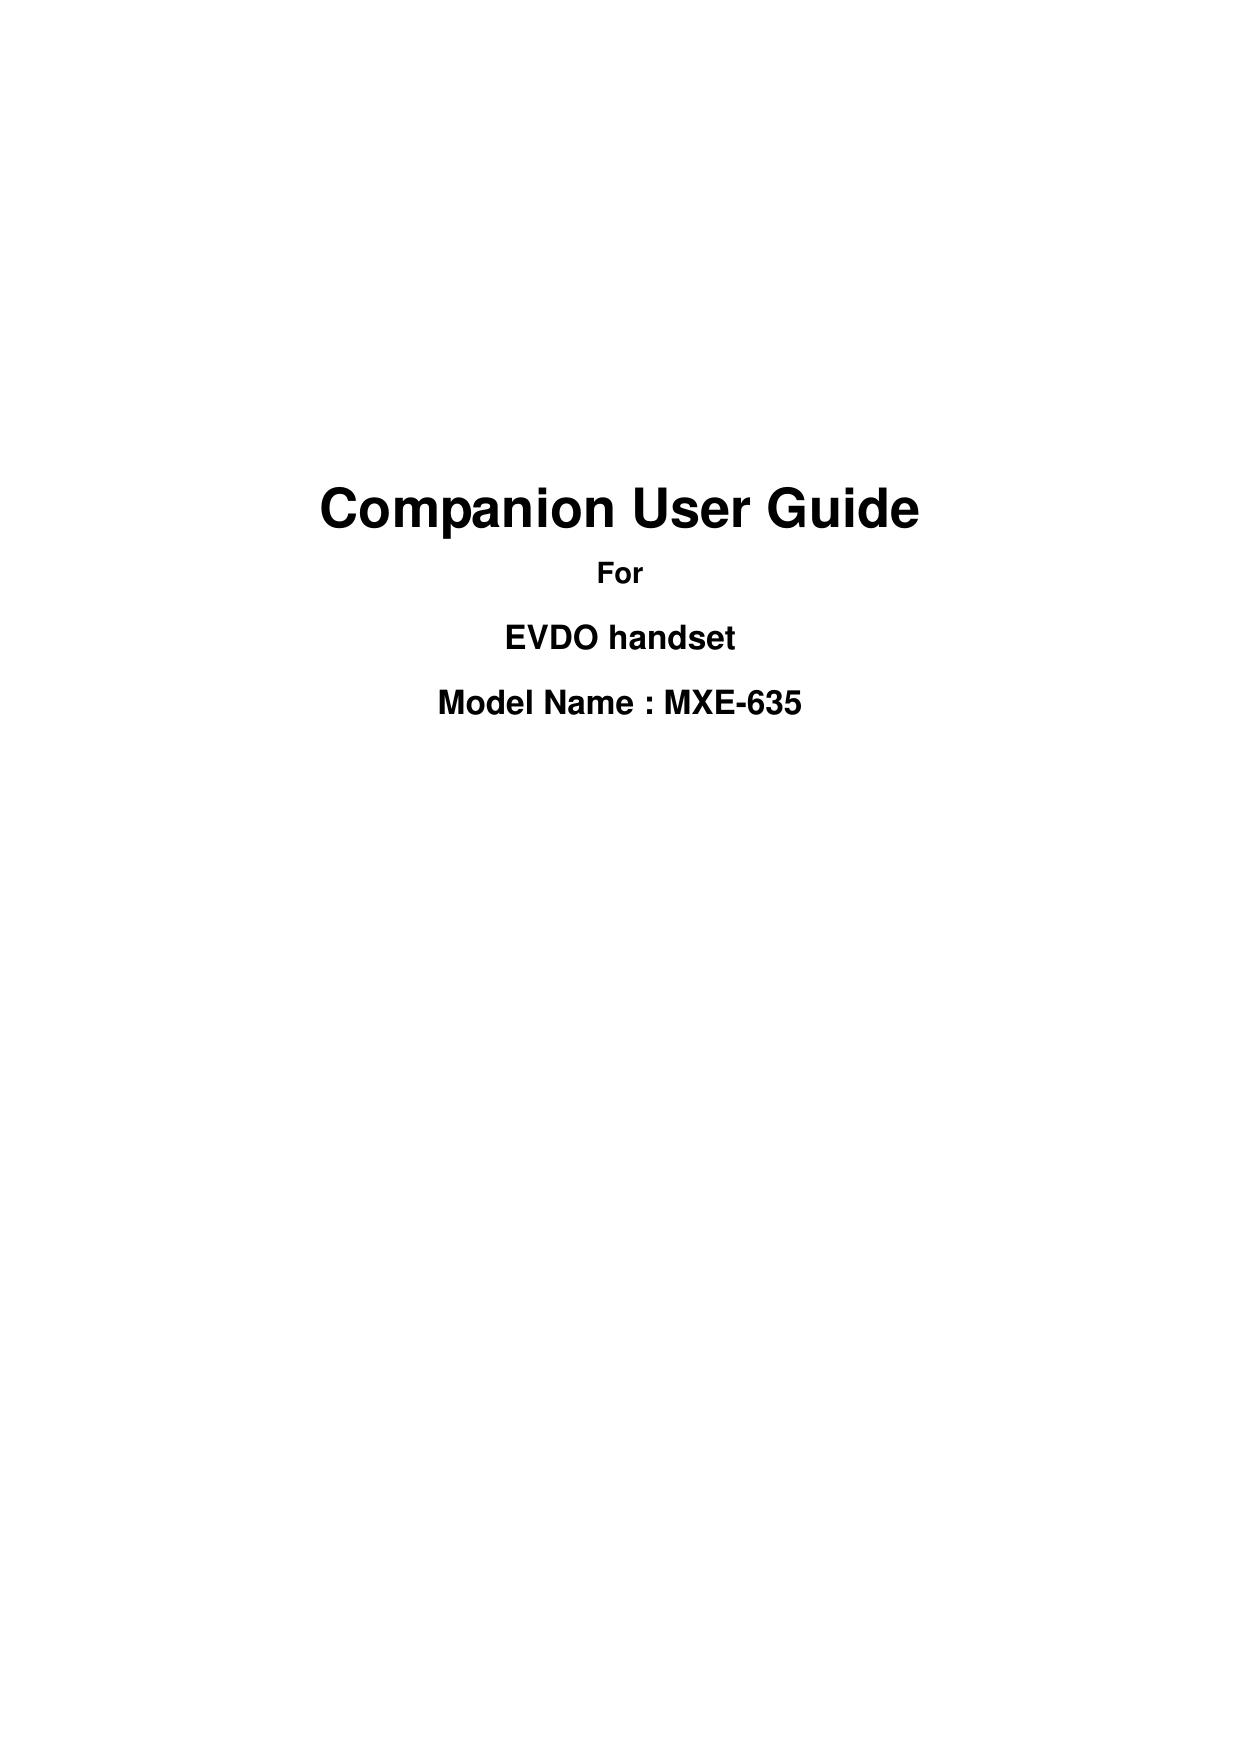      Companion User Guide For EVDO handset Model Name : MXE-635 